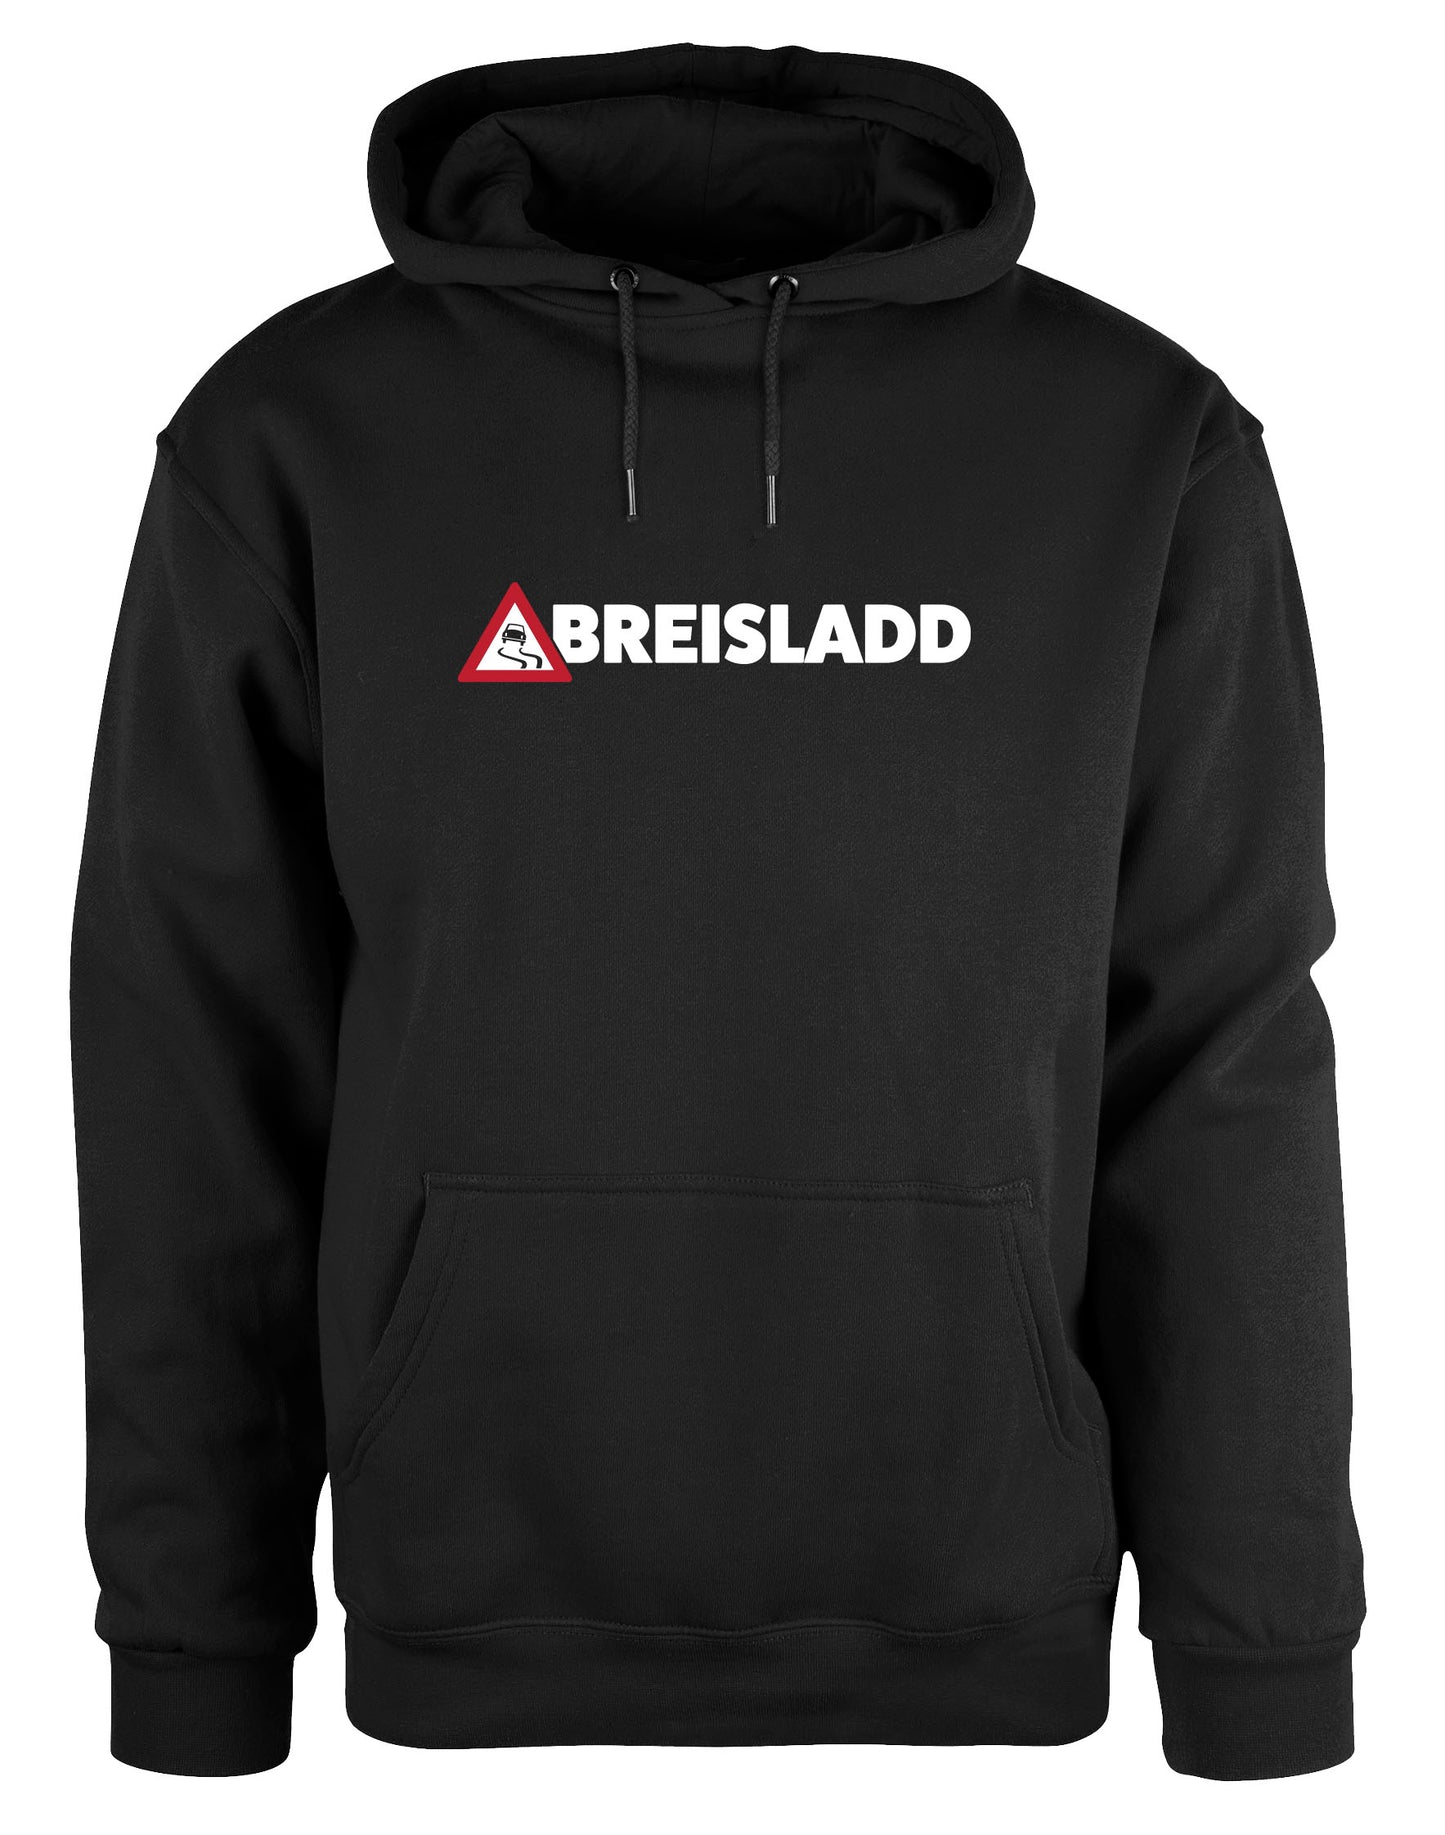 Breisladd hoodie